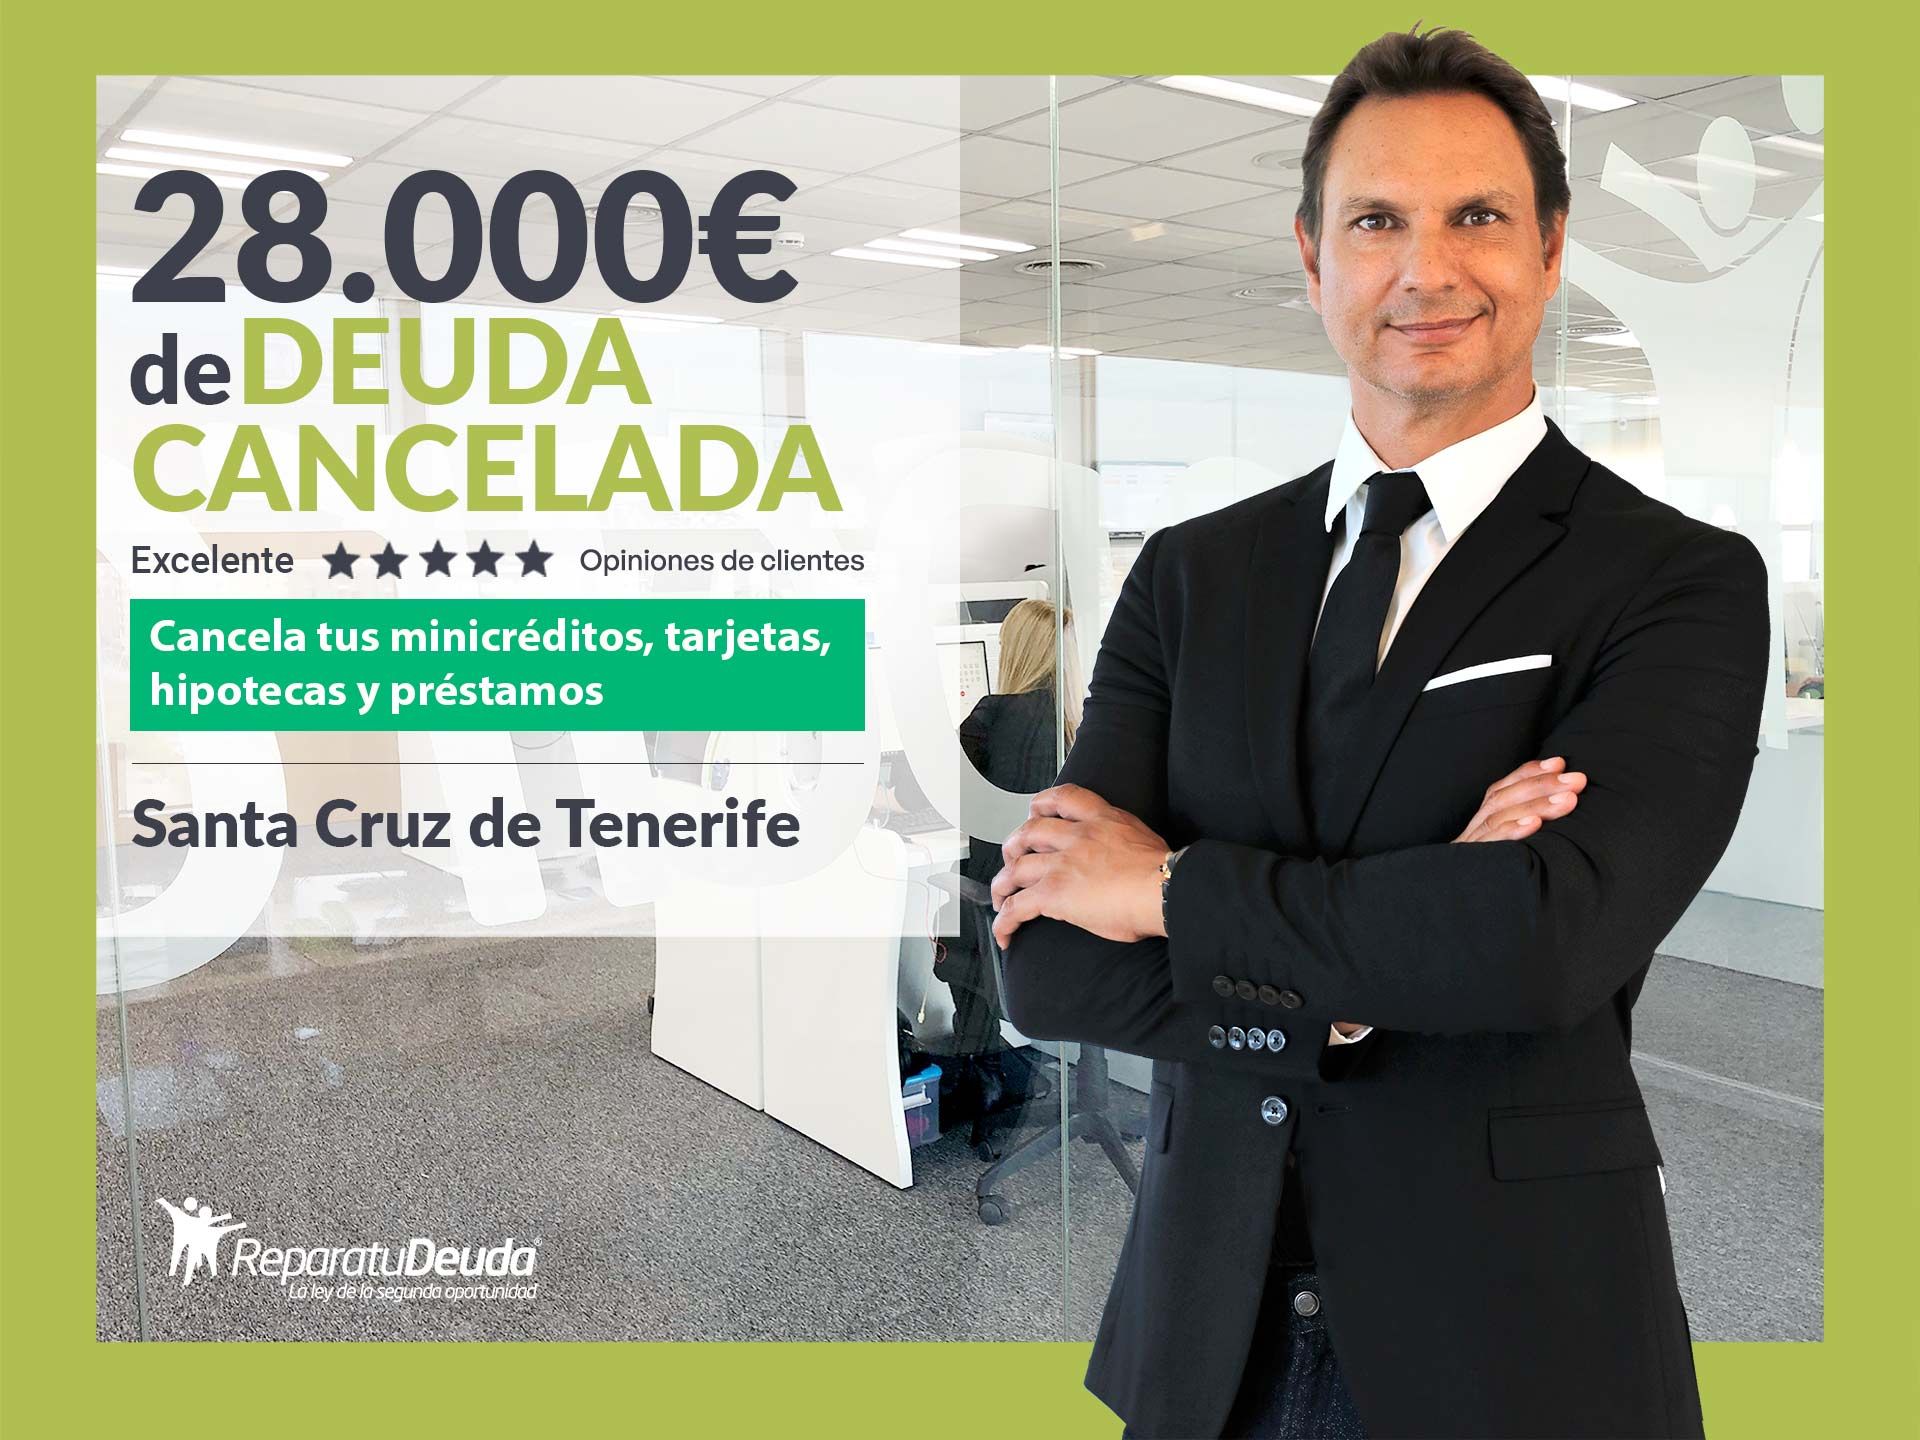 Repara tu Deuda cancela 28.000? en Santa Cruz de Tenerife (Canarias) con la Ley de Segunda Oportunidad